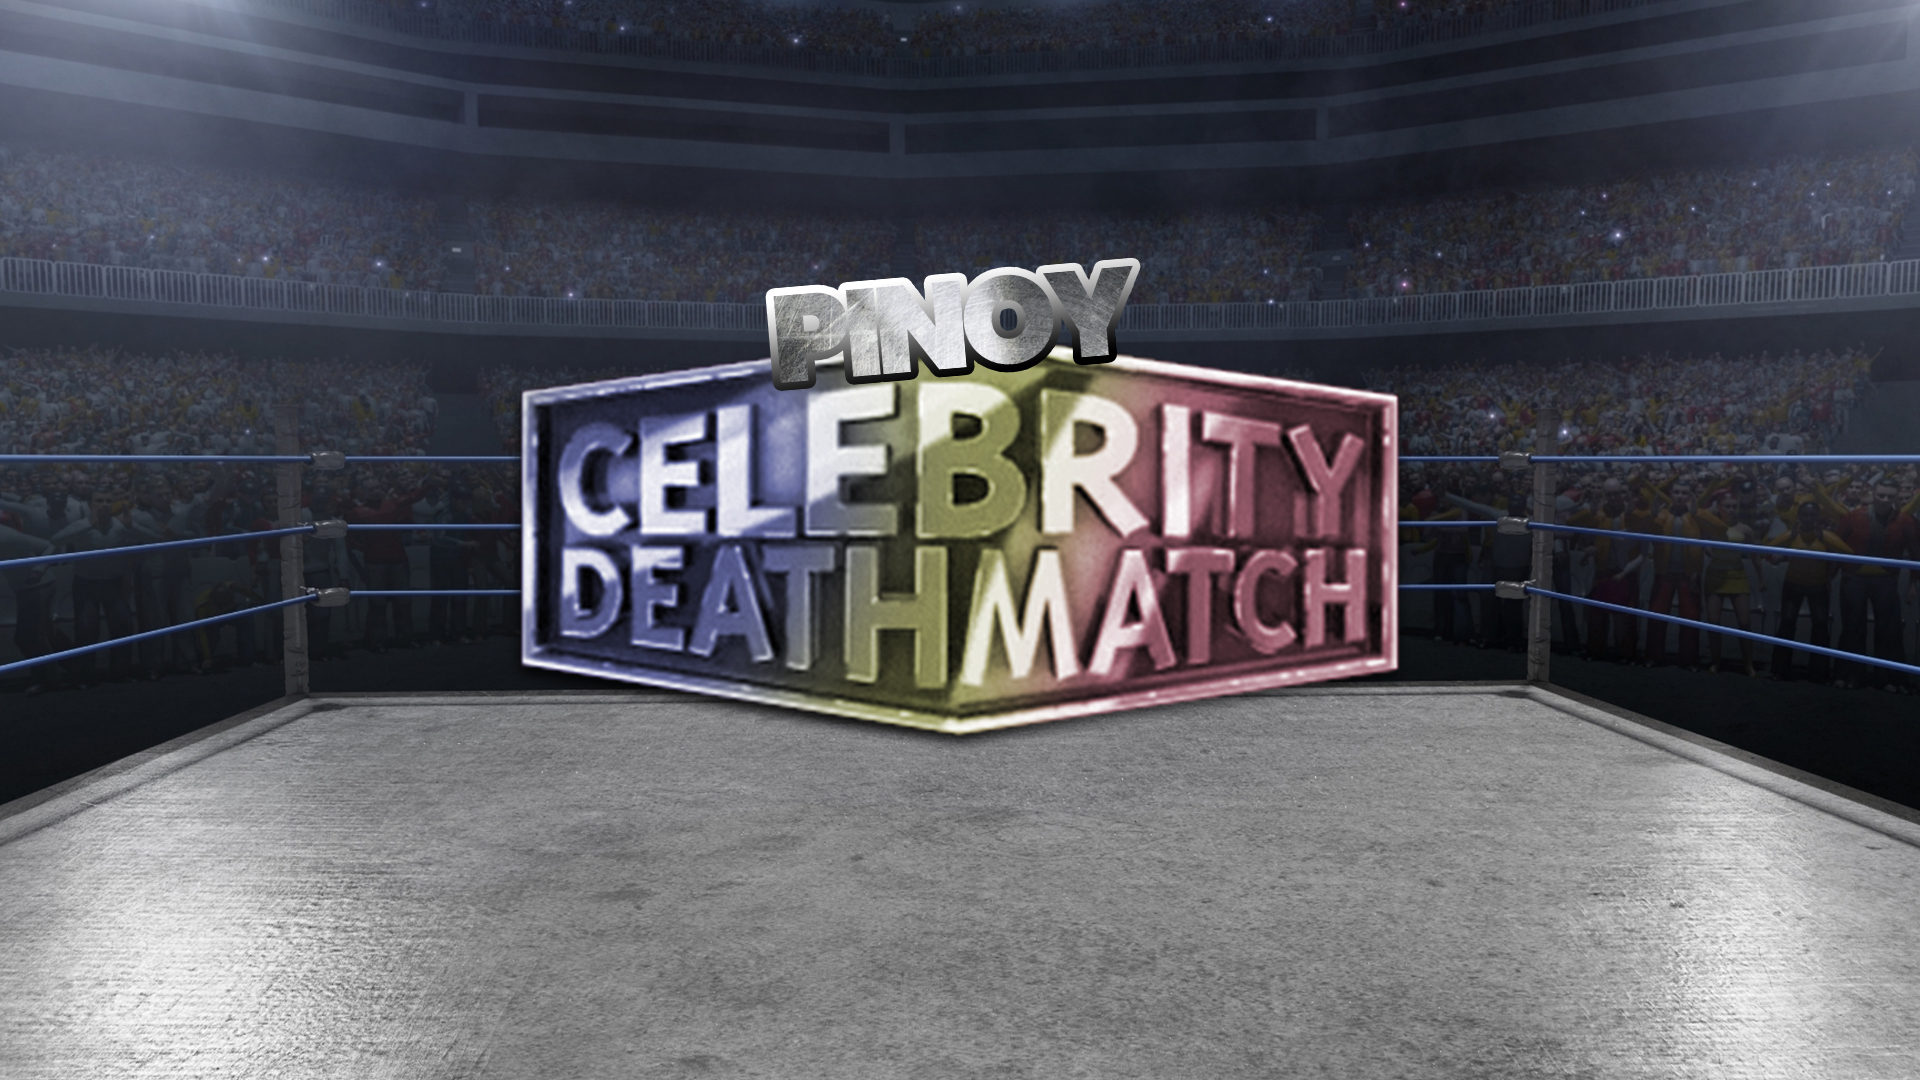 Pinoy Celebrity Deathmatch